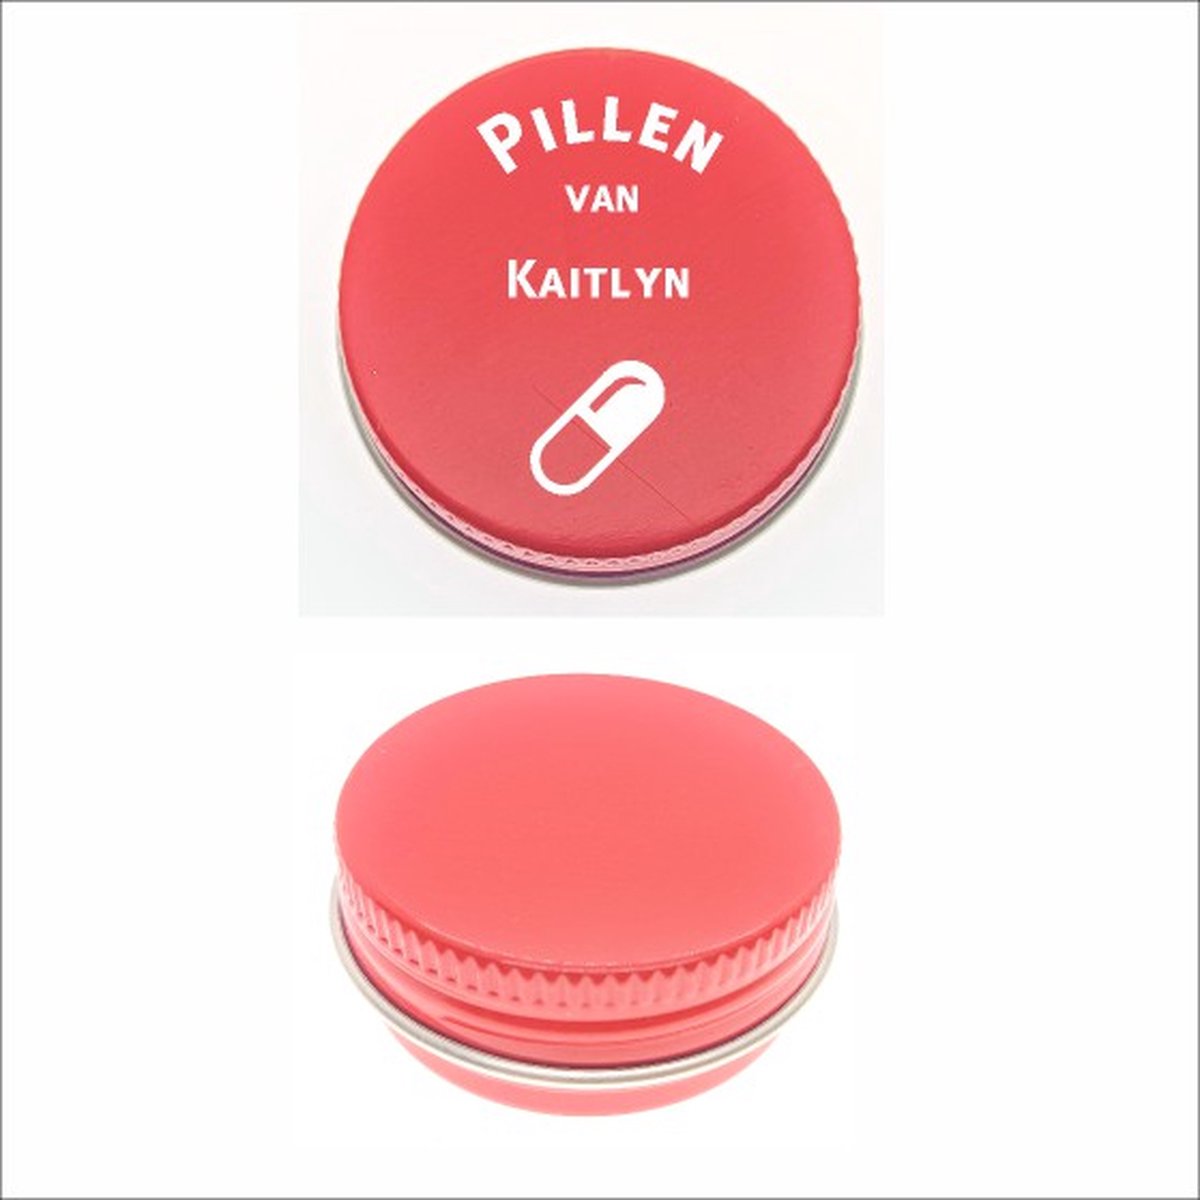 Pillen Blikje Met Naam Gravering - Kaitlyn